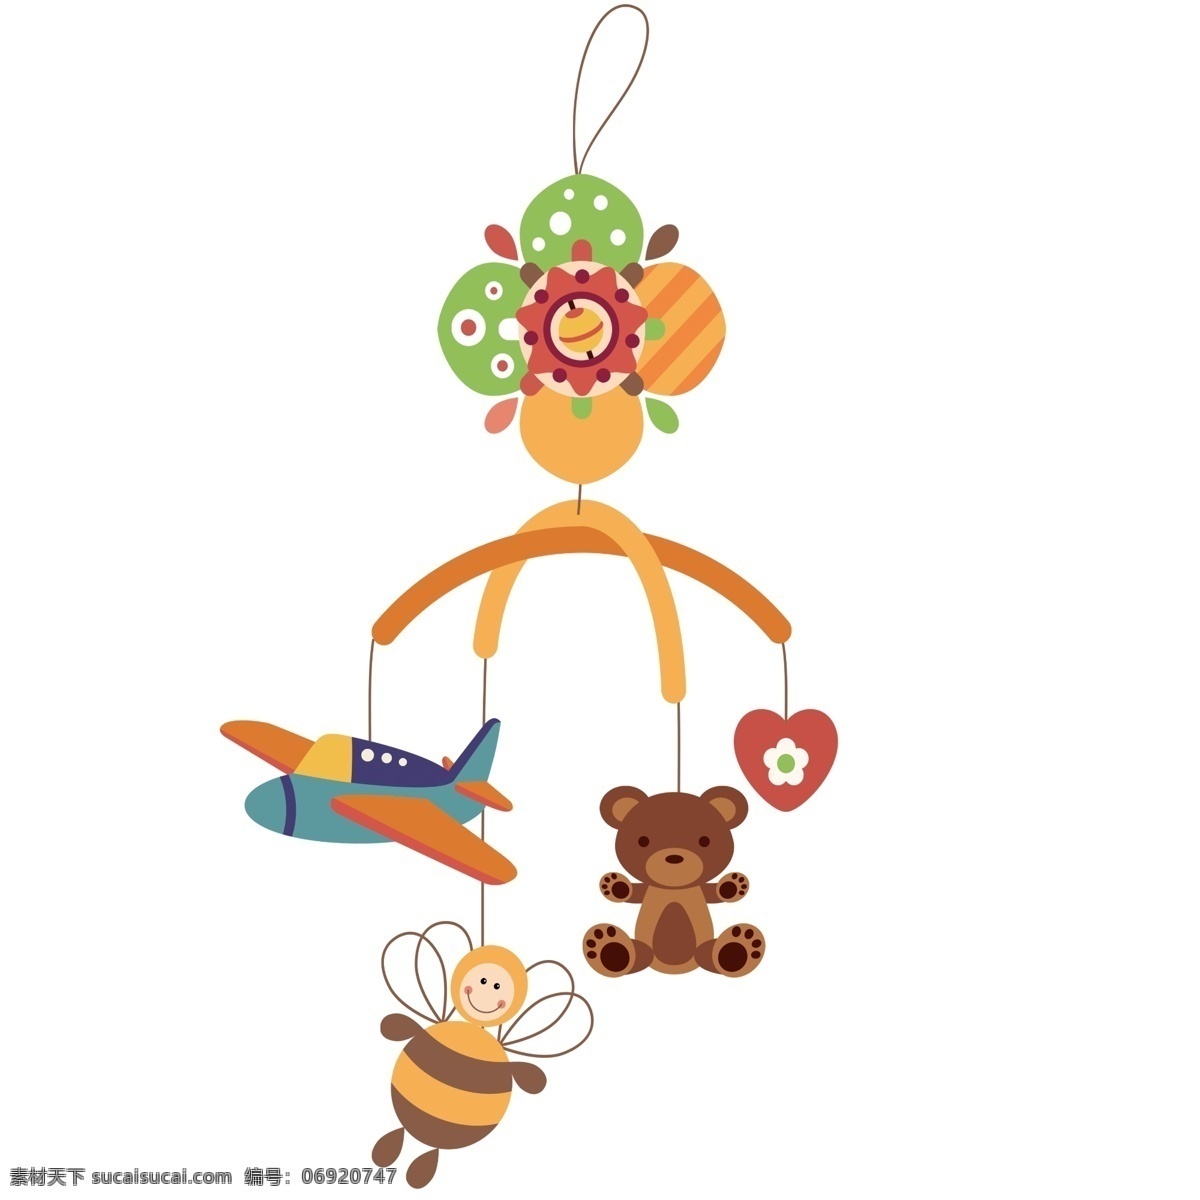 婴儿 床头 悬挂 玩具 插画 卡通 婴儿玩具 床头玩具 小熊布偶 飞机模型 黄色大蜜蜂 婴儿用品 儿童